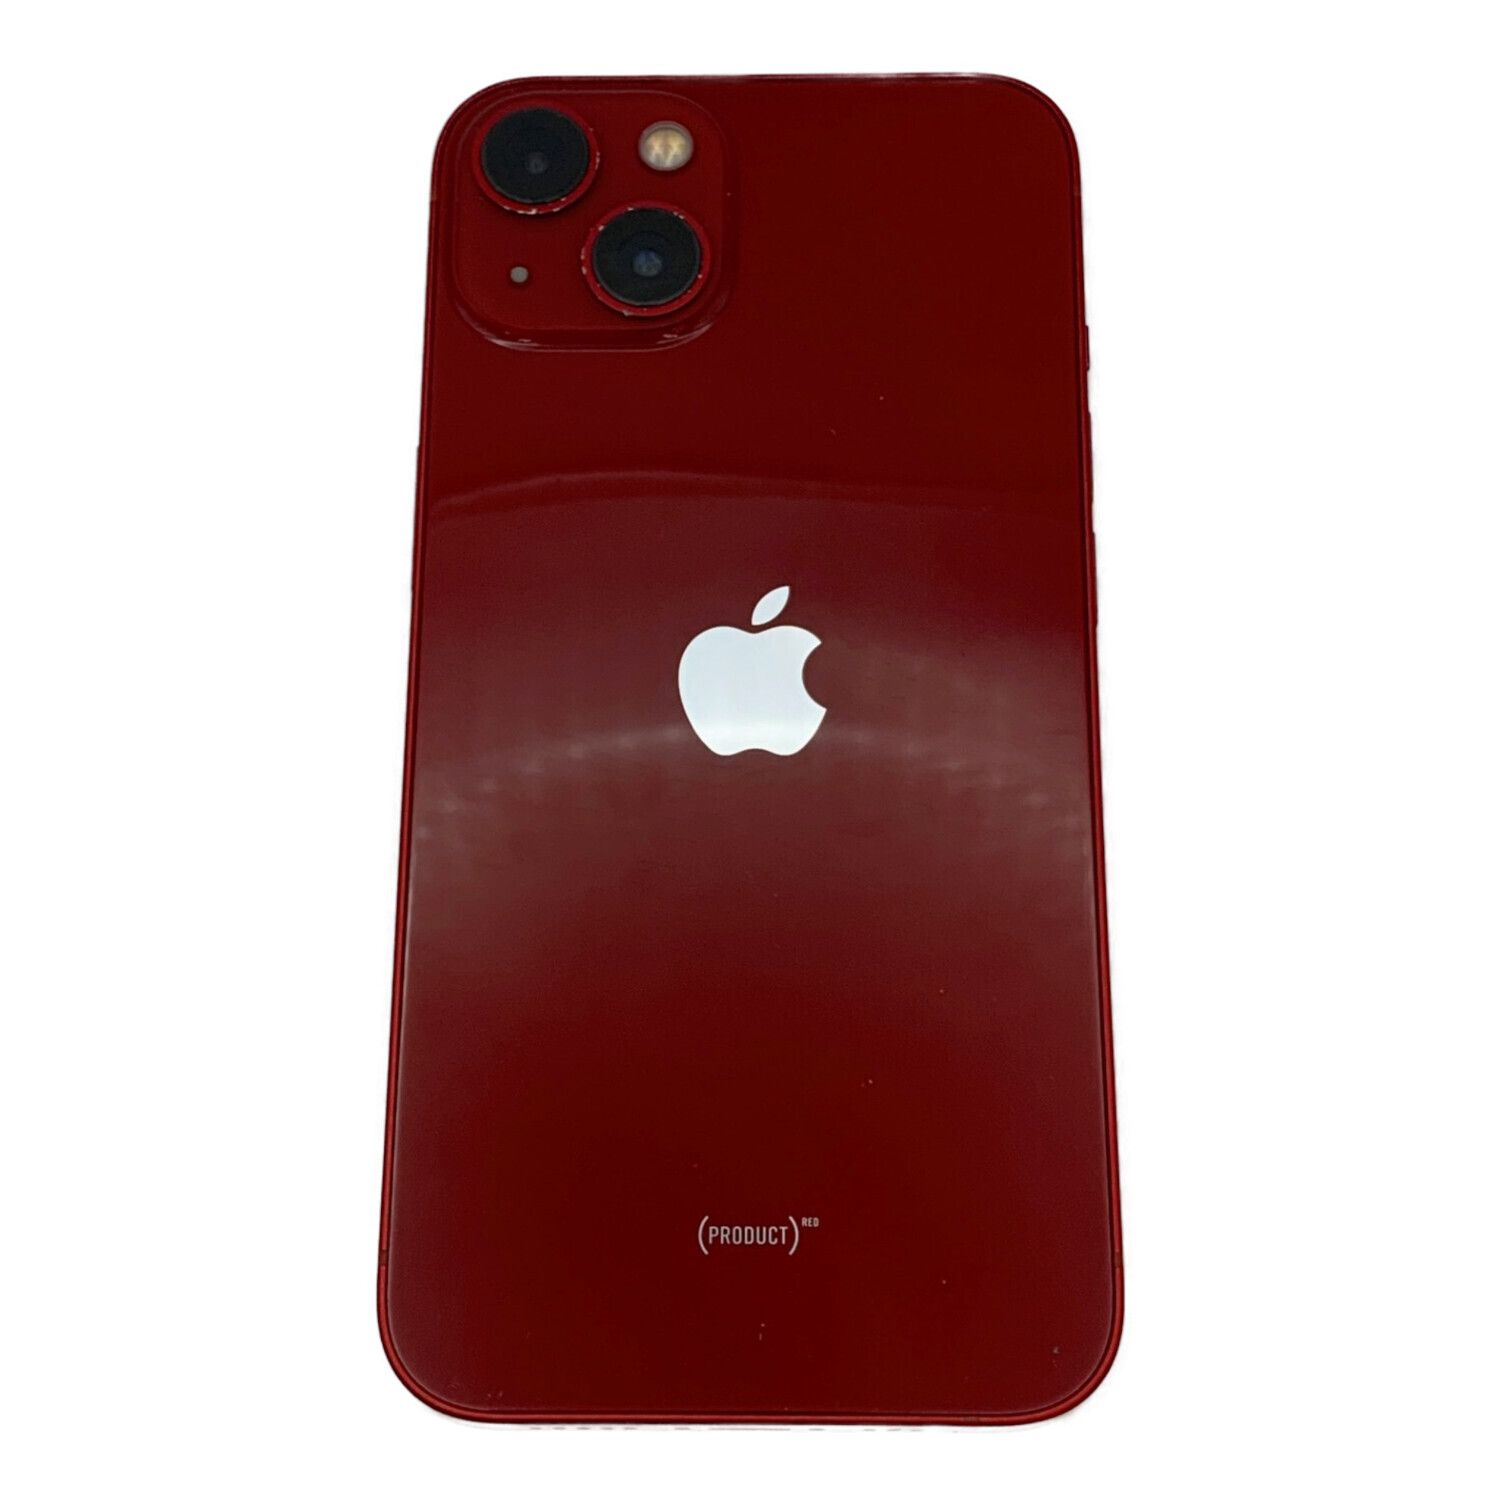 買い物サービス iPhone 11 (PRODUCT)RED 赤 256GB バッテリー87